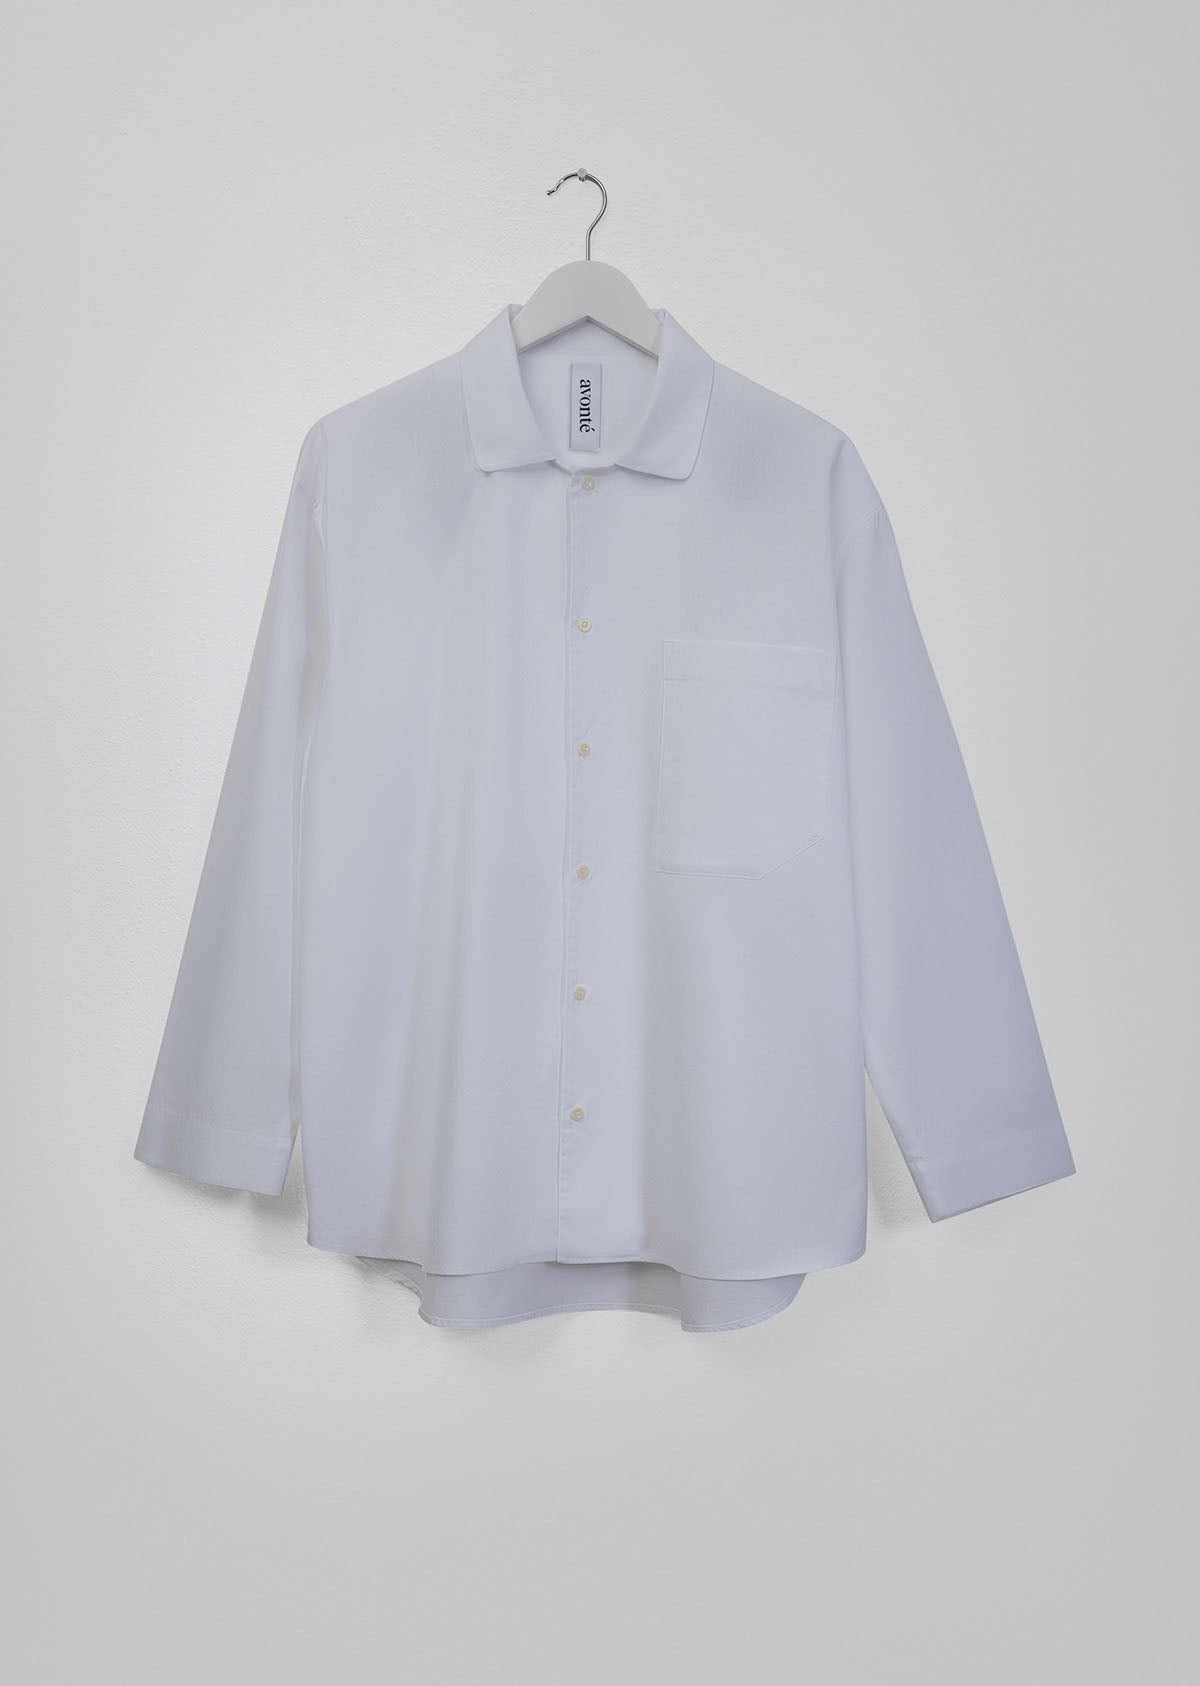 pyjama shirt in colorway worthy white_avonte